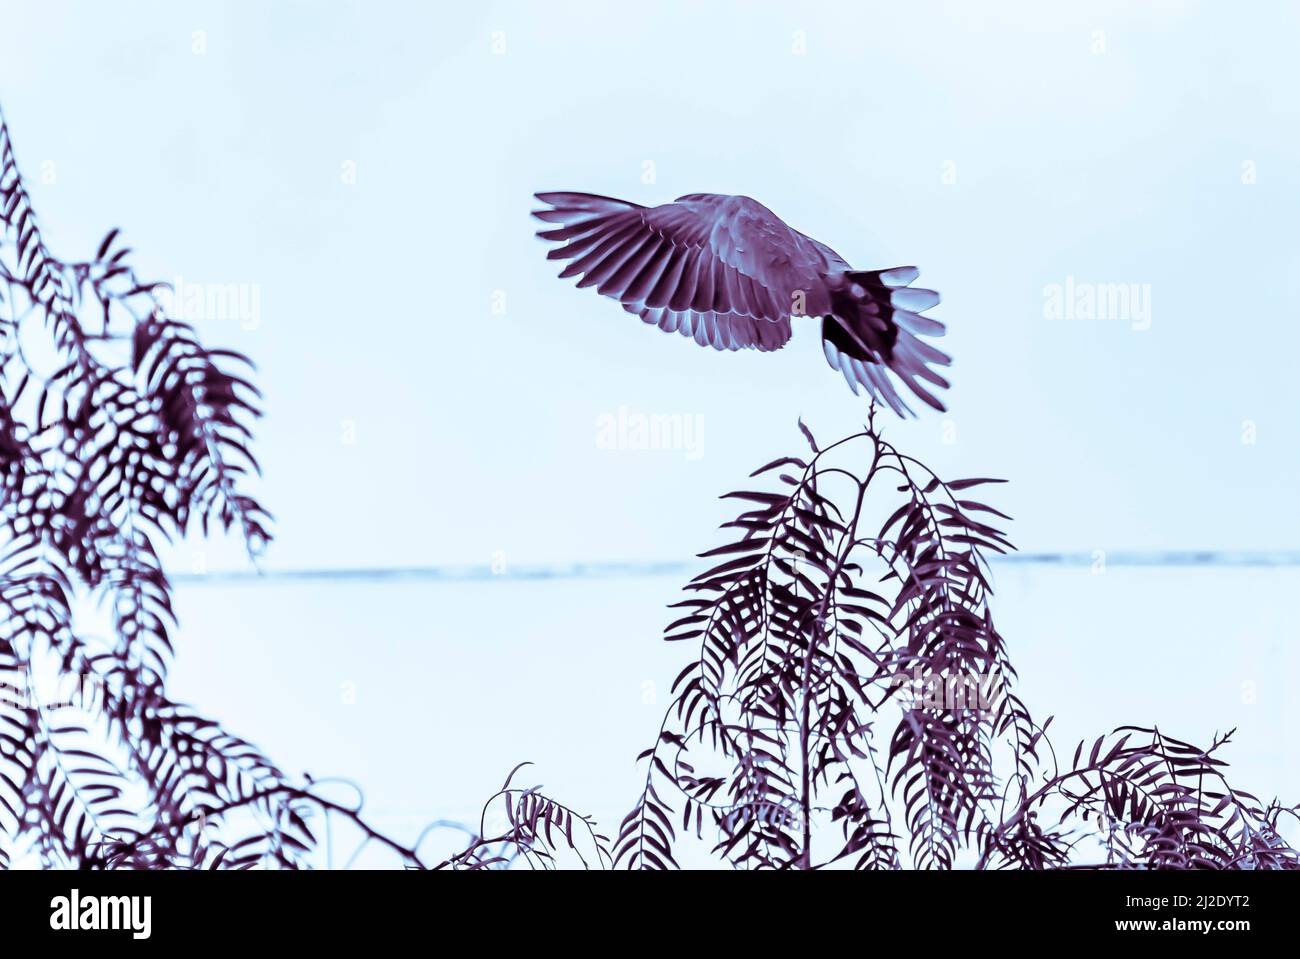 Pigeon Shy volare. Foto monocromatica a contrasto di altezza di un piccione che vola sopra gli alberi con le ali che ricoprono la testa. Cielo di sfondo sfocato sovraesposto. Foto Stock